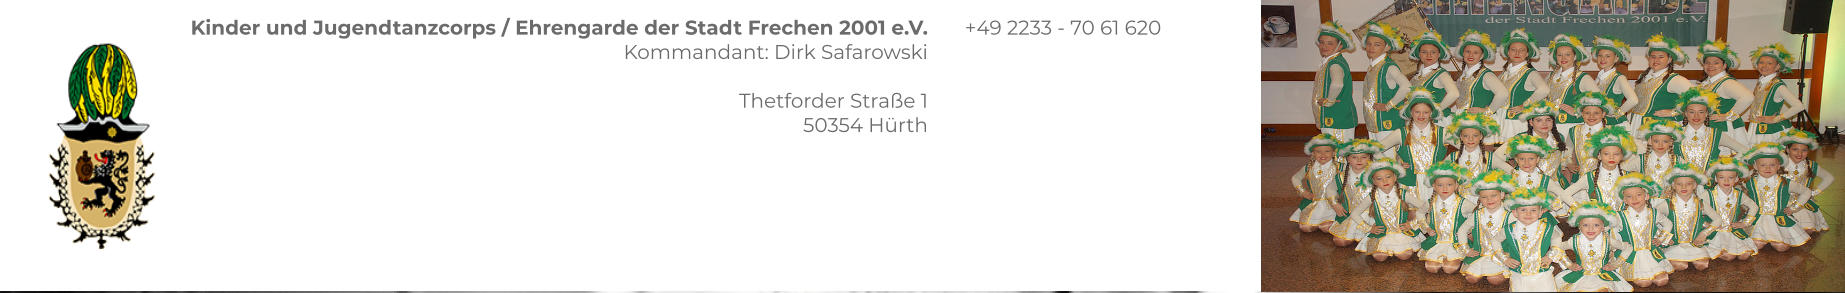 Kinder und Jugendtanzcorps / Ehrengarde der Stadt Frechen 2001 e.V. Kommandant: Dirk Safarowski  Thetforder Straße 1 50354 Hürth  +49 2233 - 70 61 620